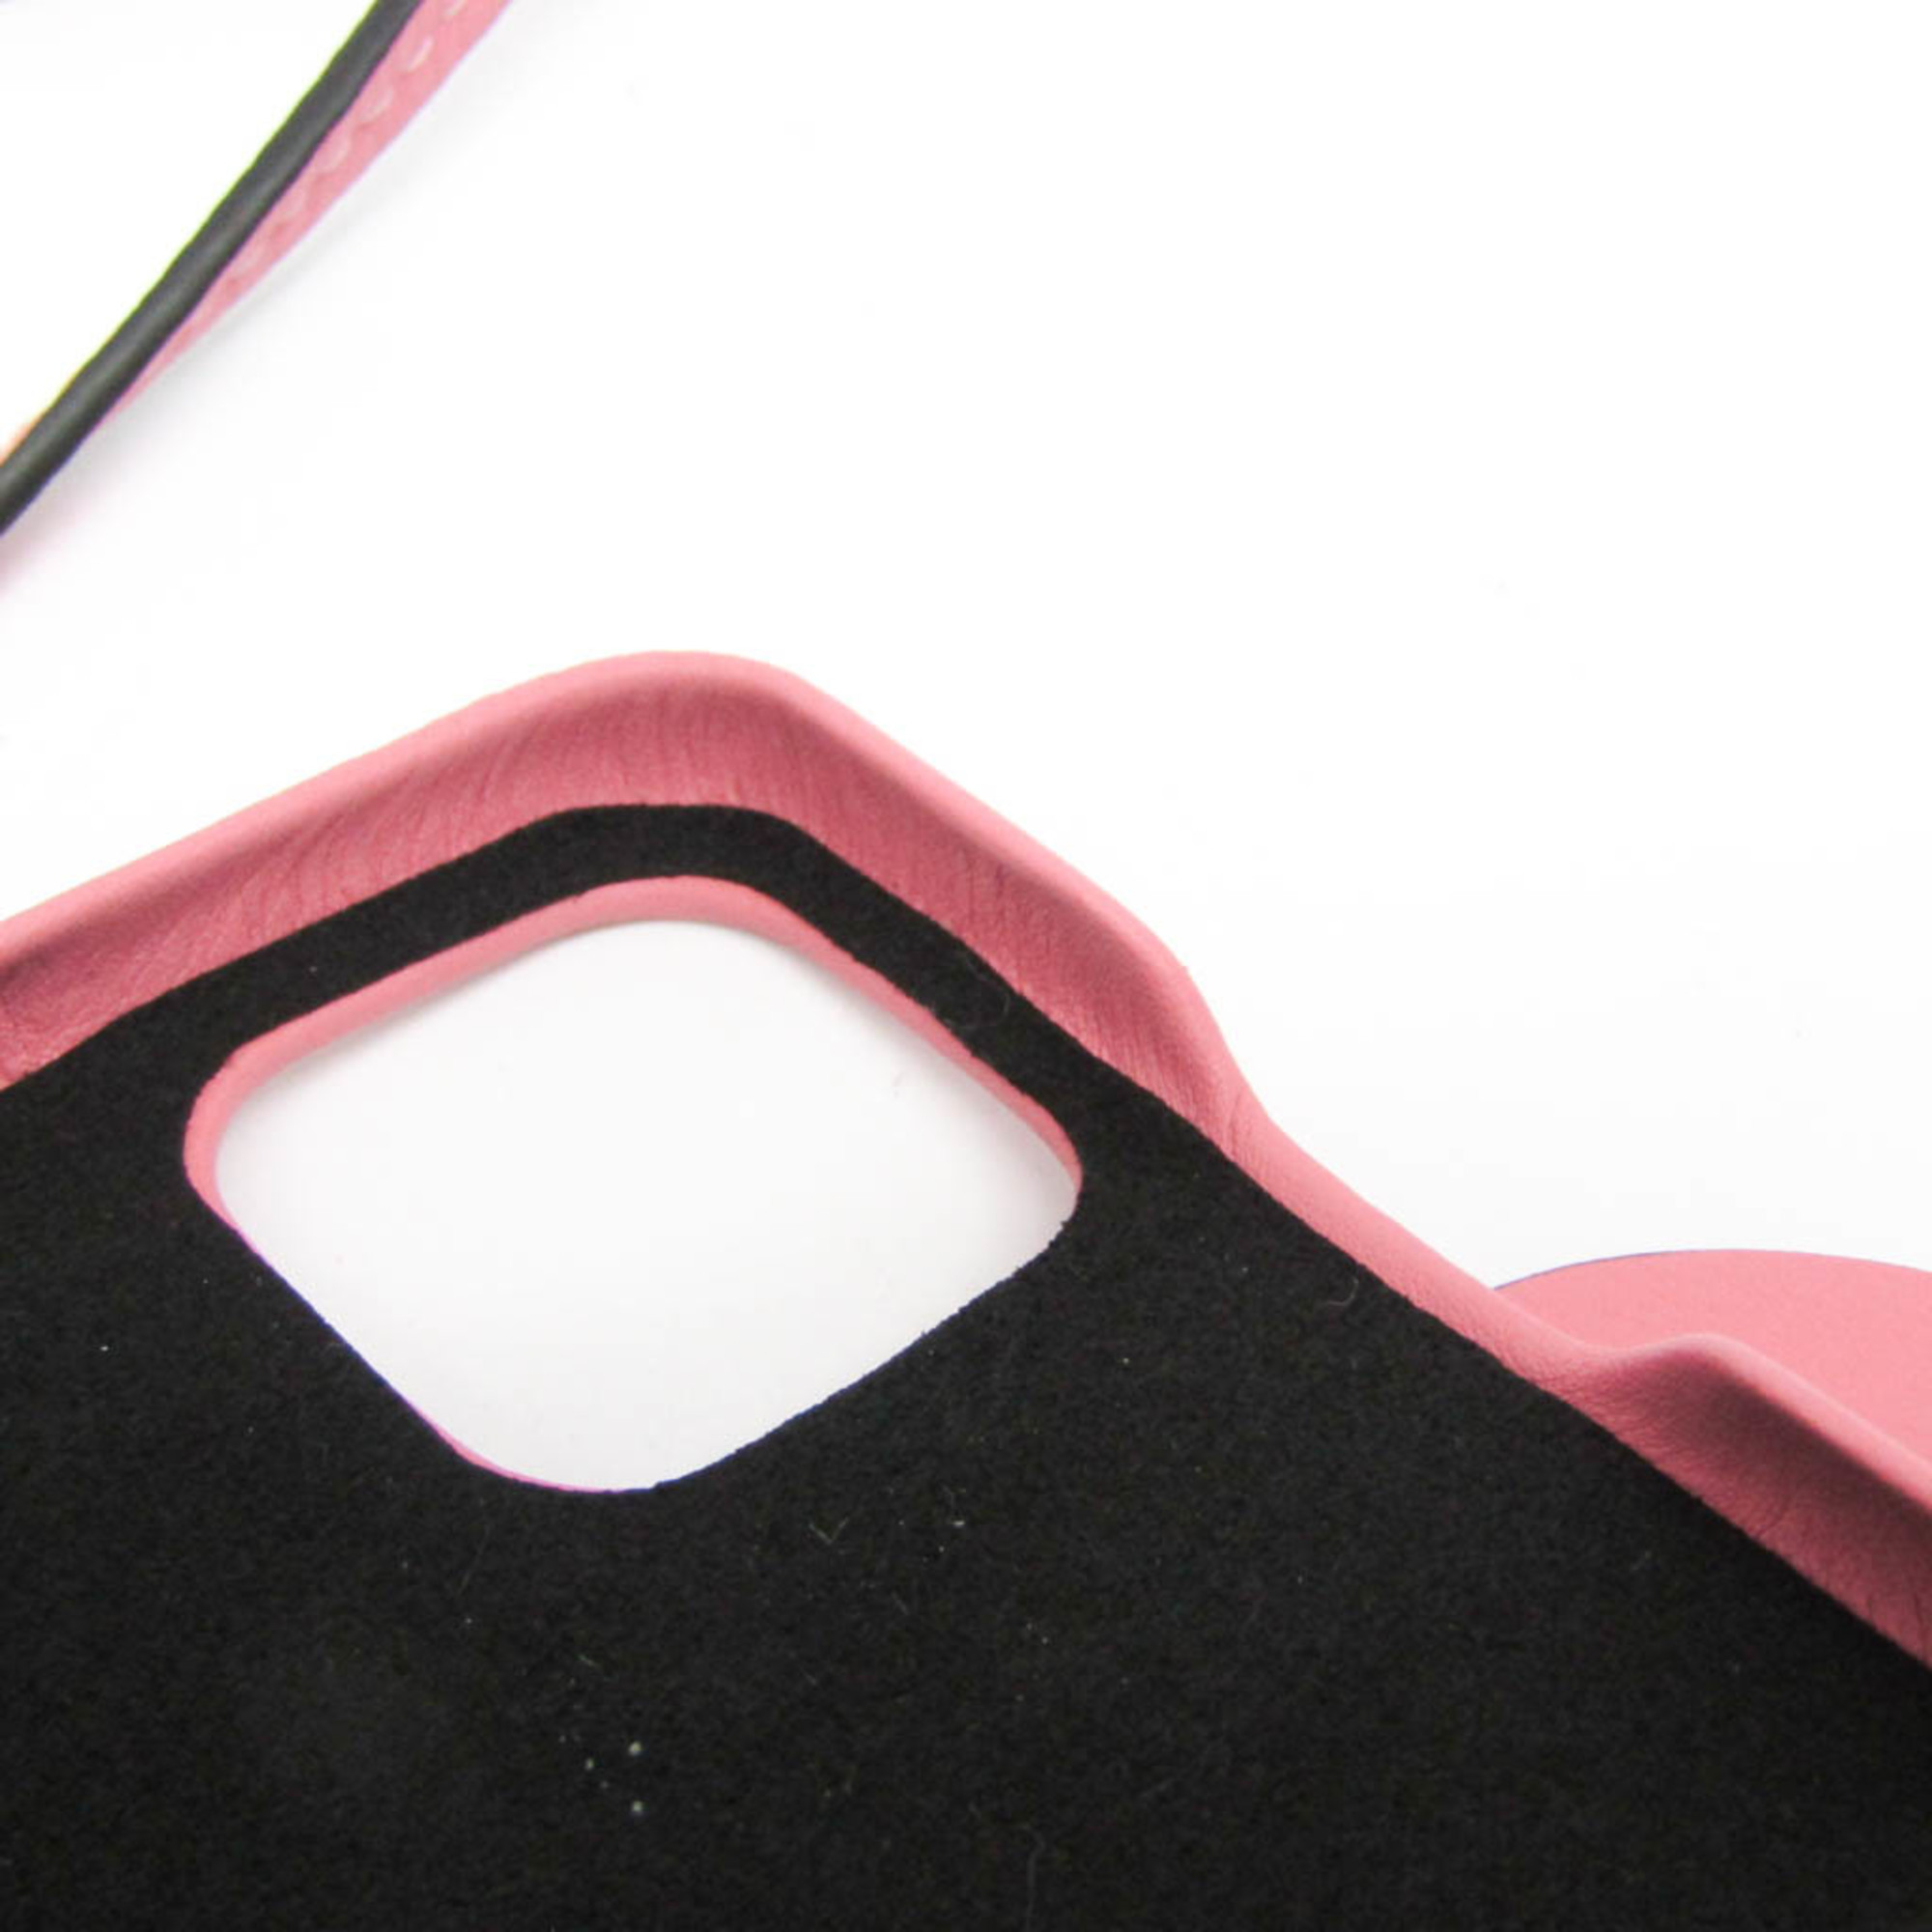 ロエベ(Loewe) エレファント レザー バンパー iPhone 11 対応 ピンク